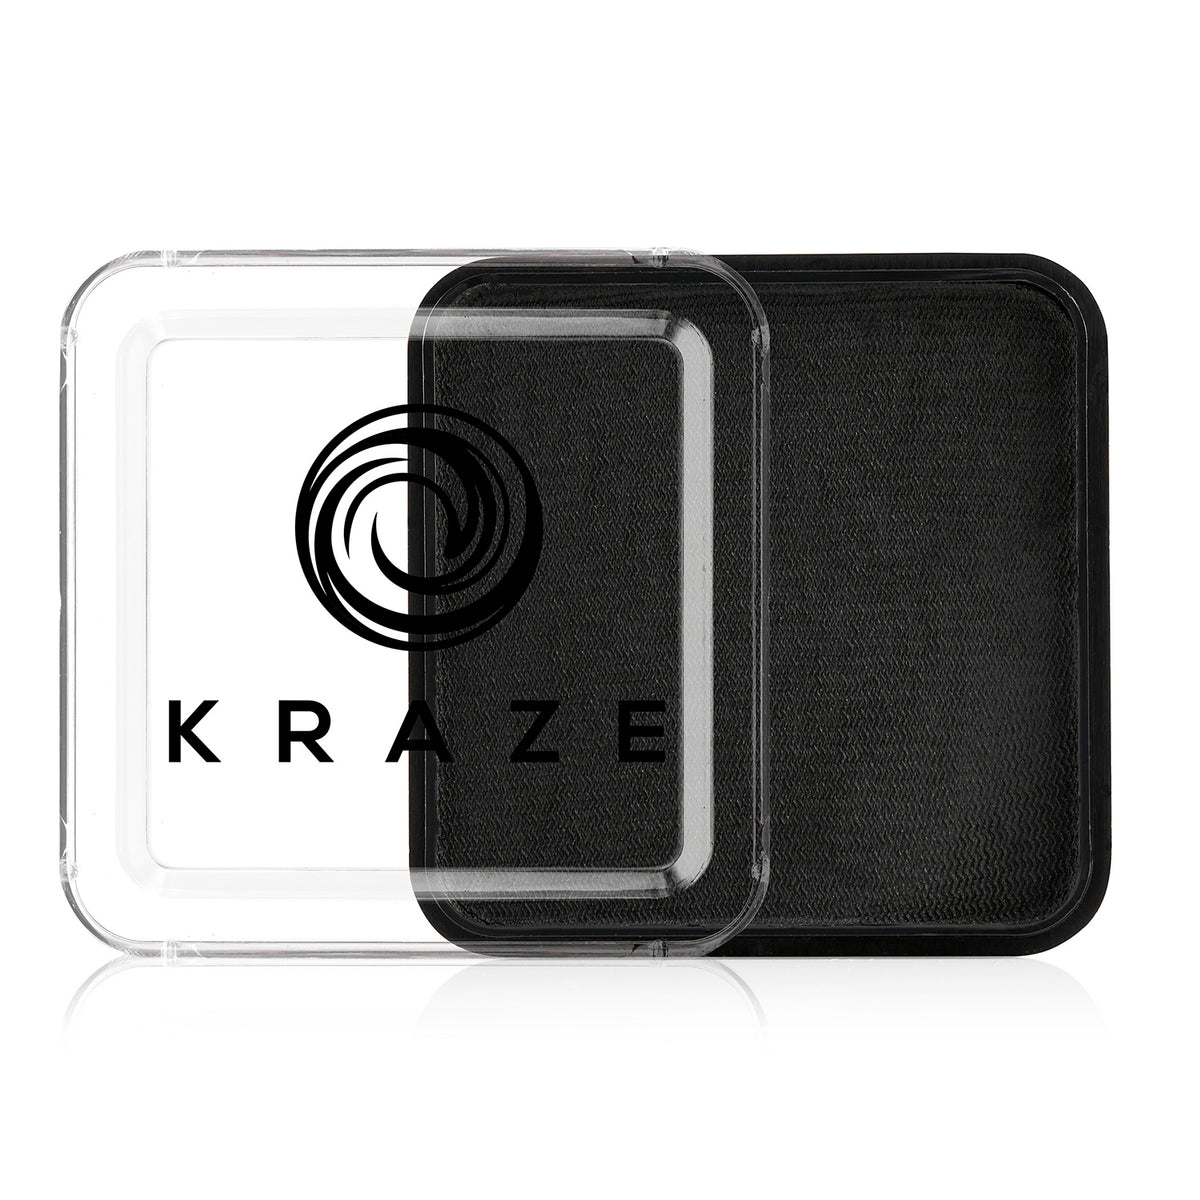 Kraze Square - Black (50 gm)